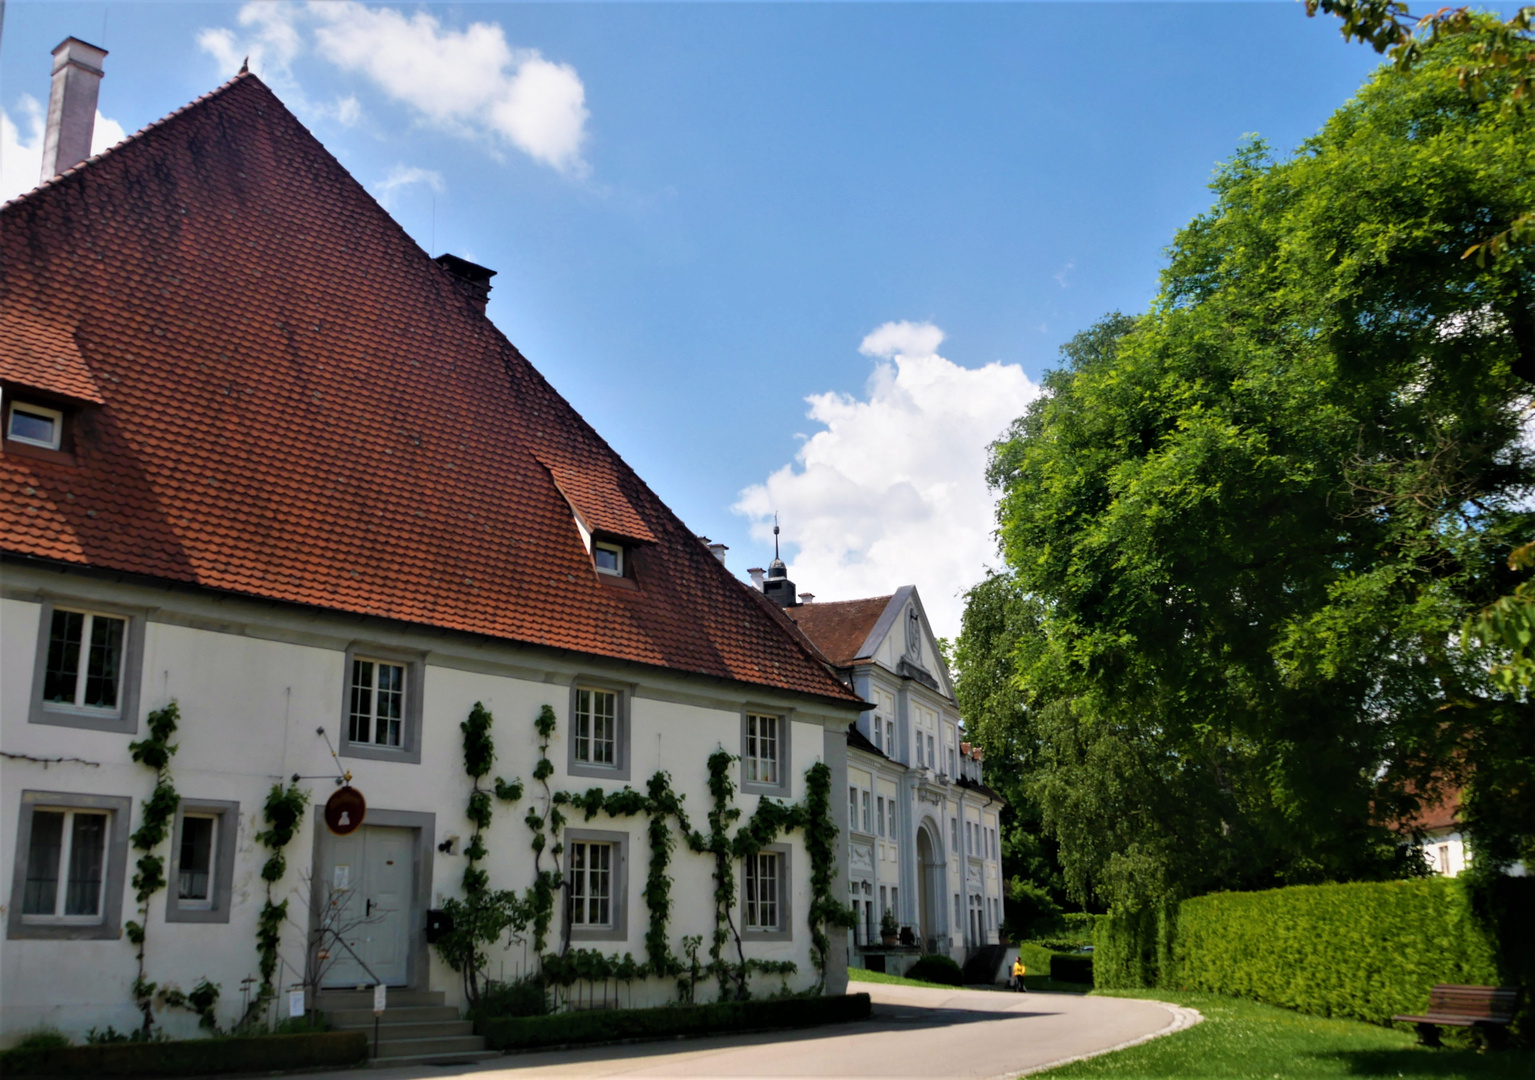 Urlaub 2021 am Bodensee - Glasbläserei und Oberes Tor von Schloss Salem